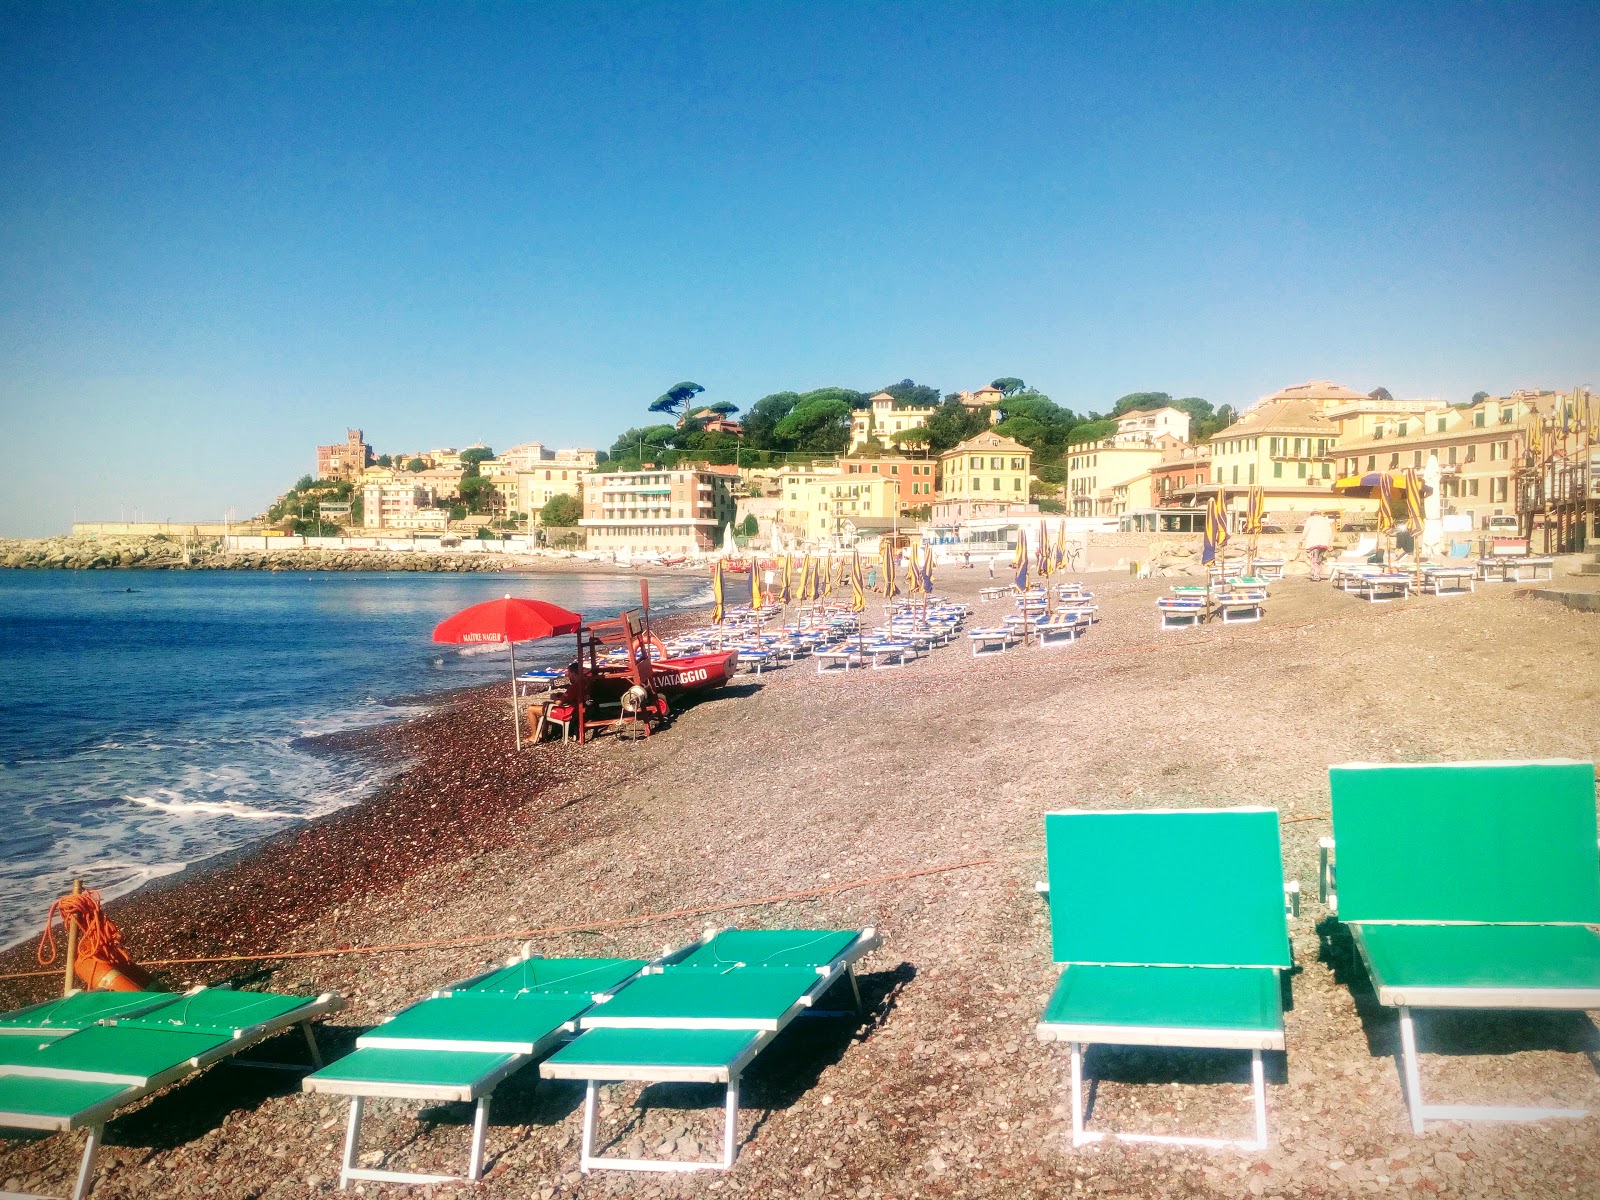 Spiaggia Sturla'in fotoğrafı uçurumlarla desteklenmiş